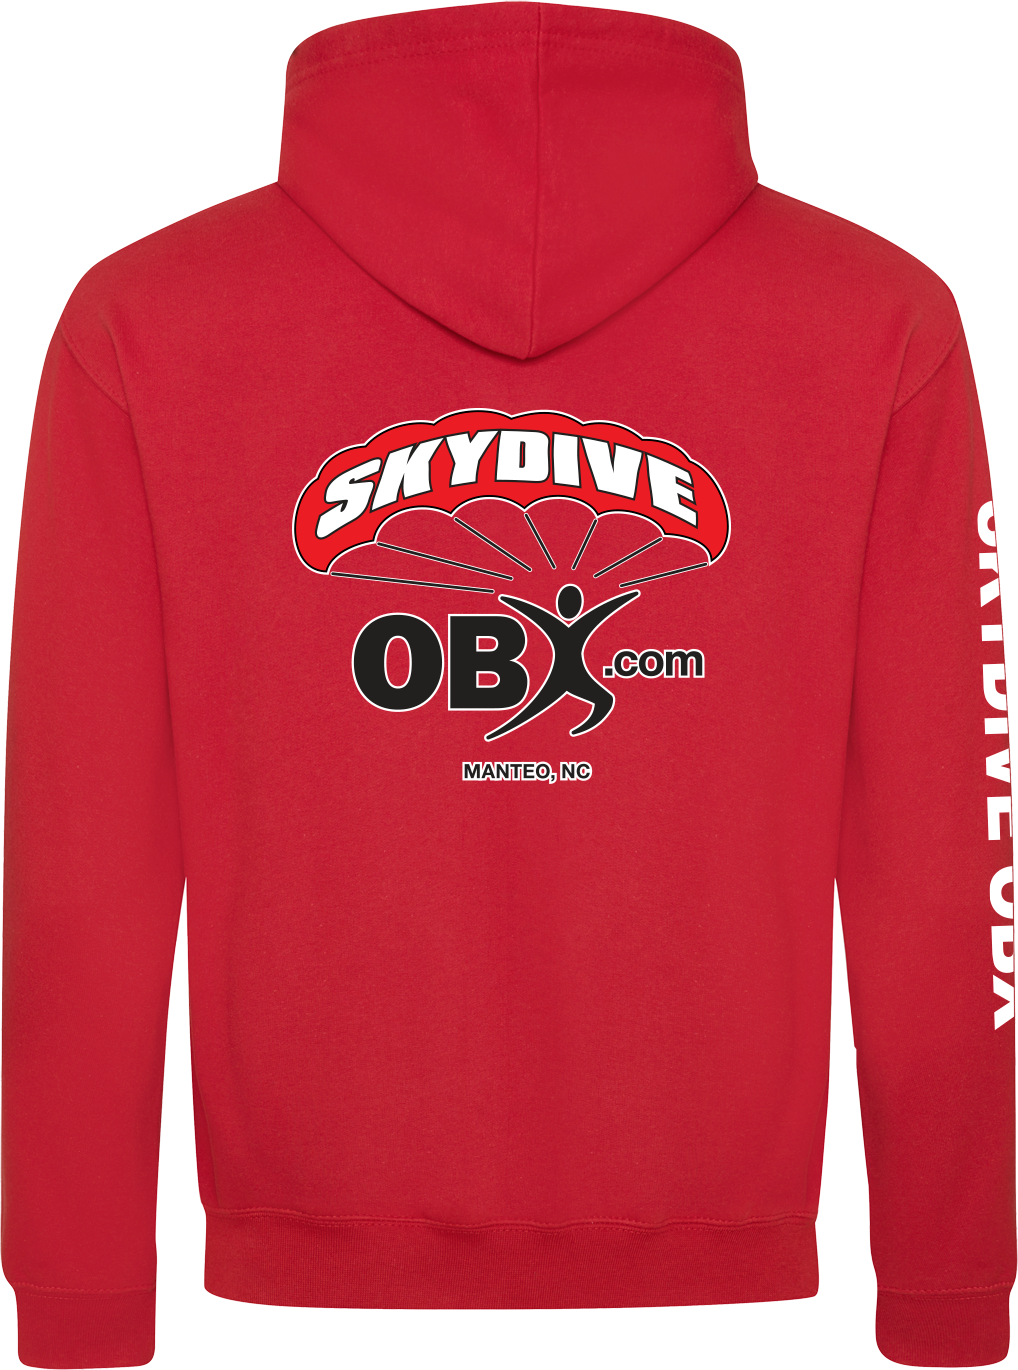 Download Mens Red Hoodie - Skydive OBX